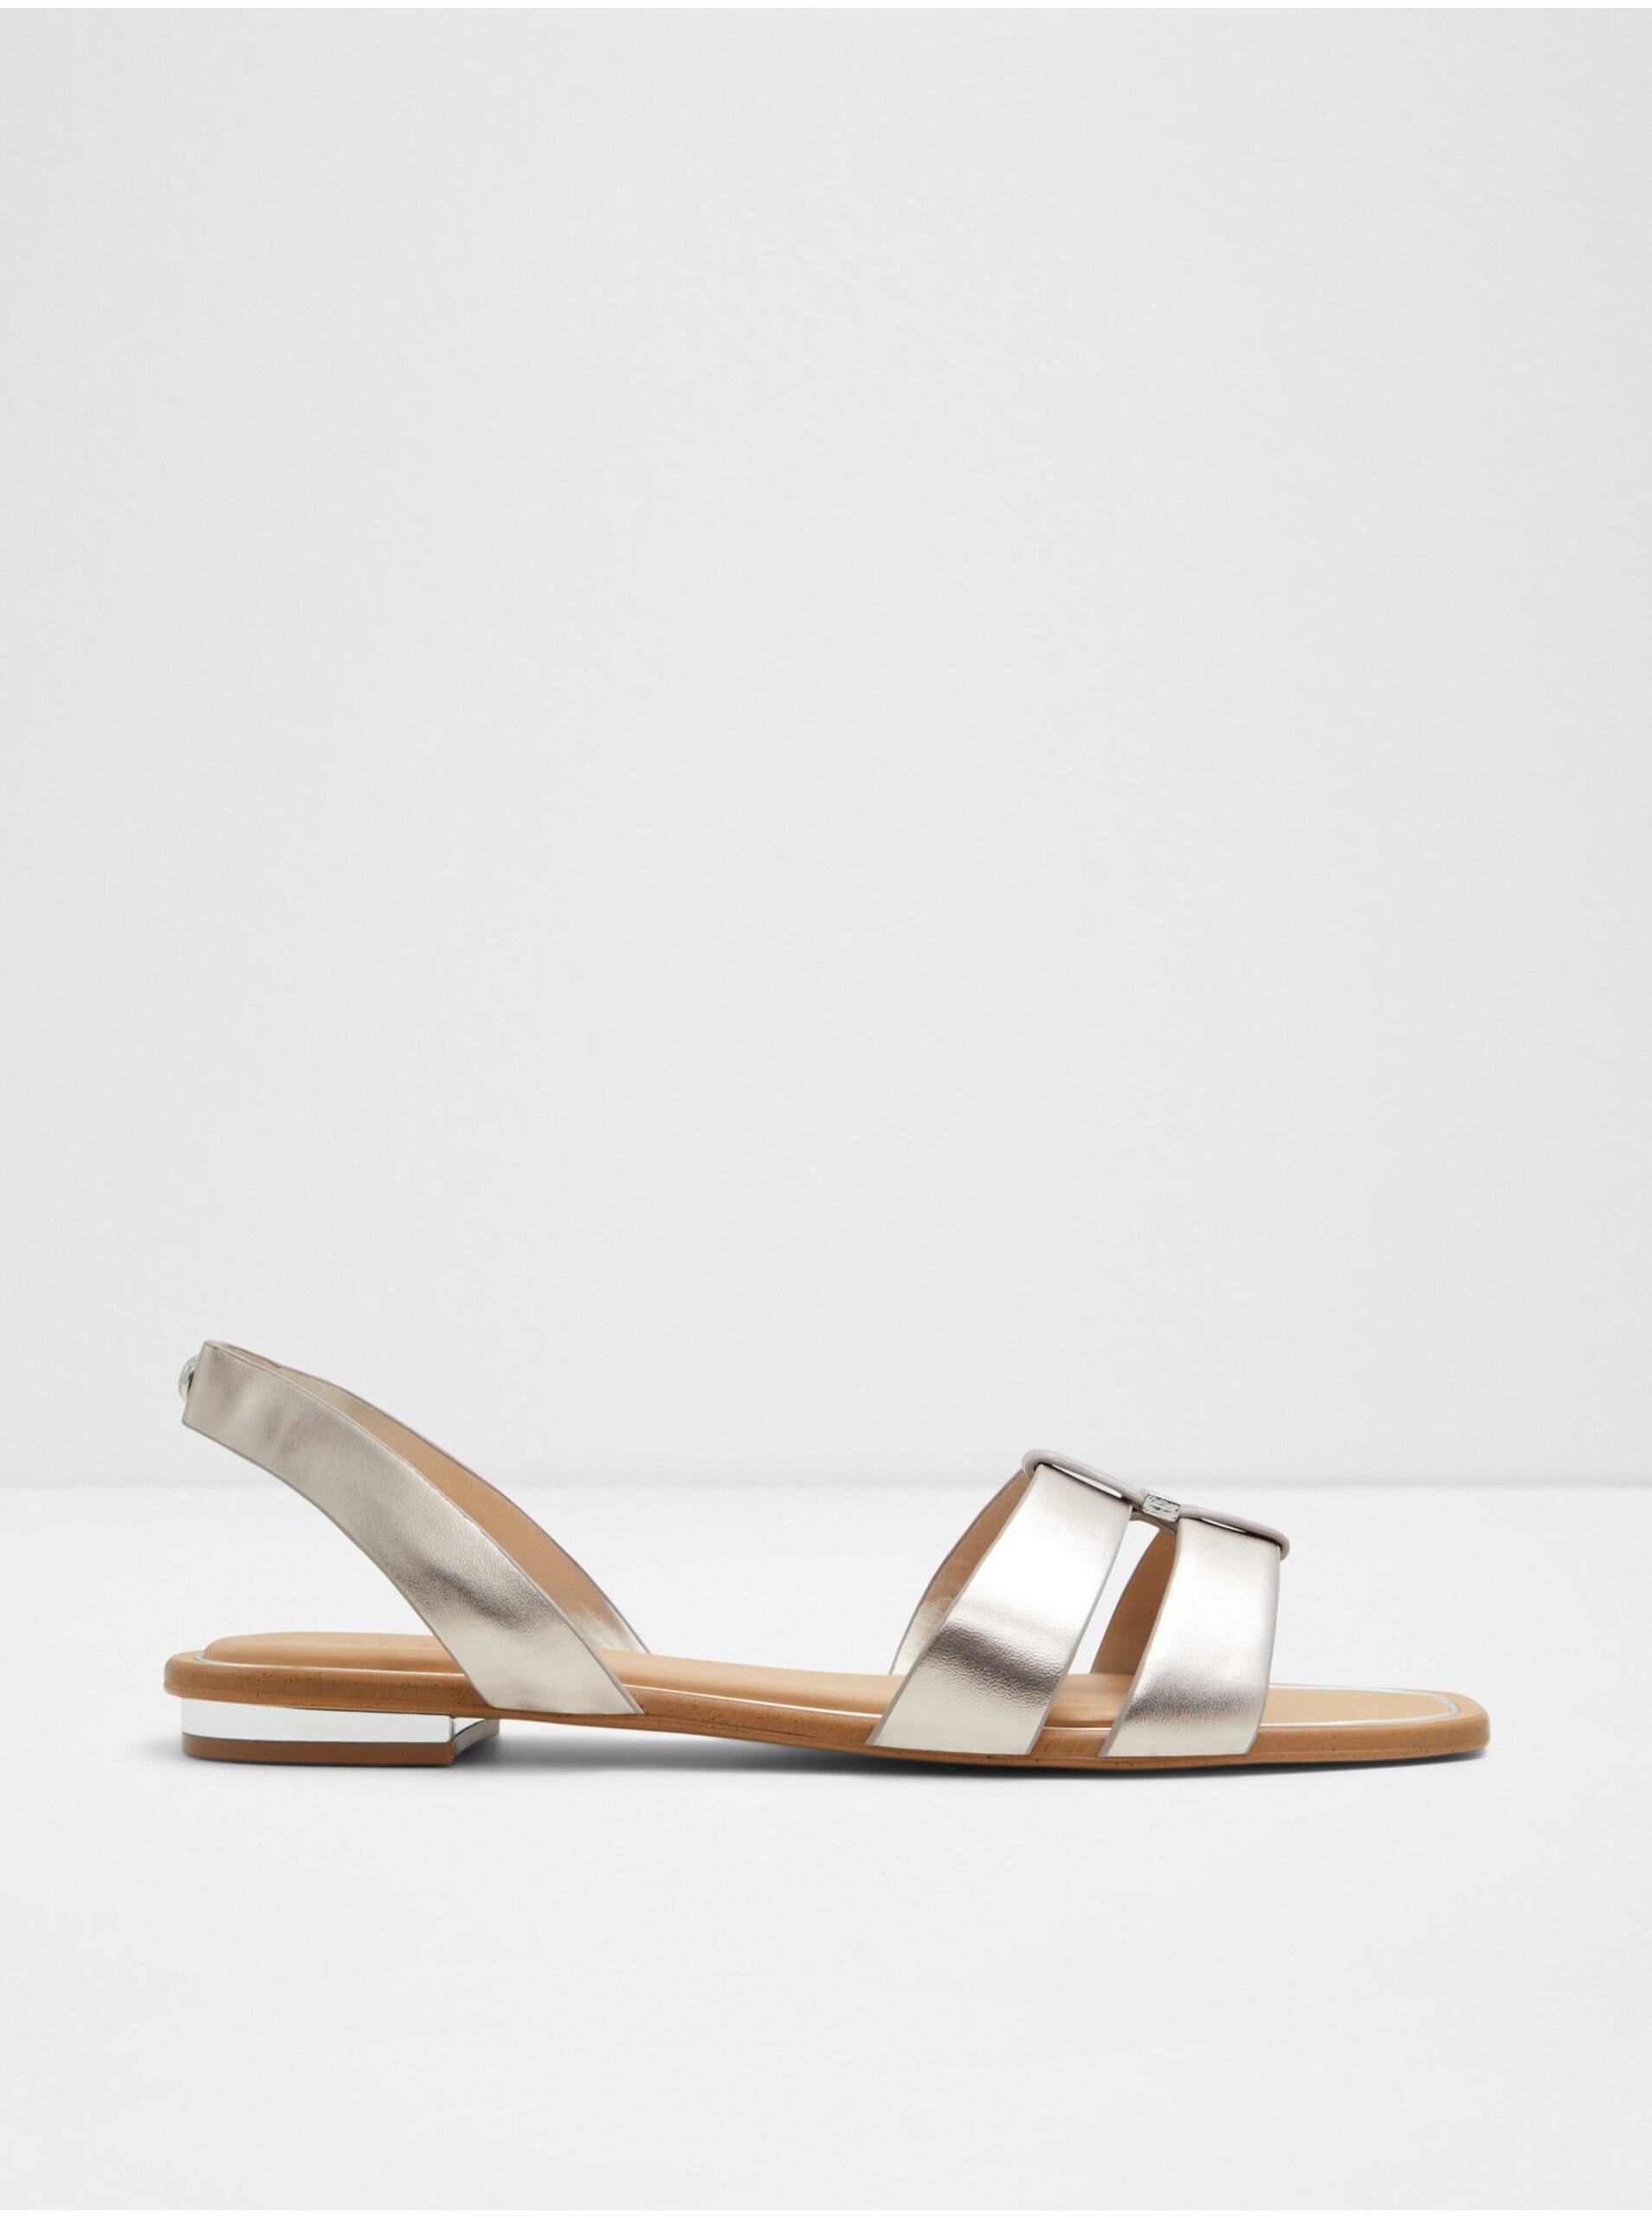 E-shop Dámské sandály ve stříbrné barvě ALDO Balera